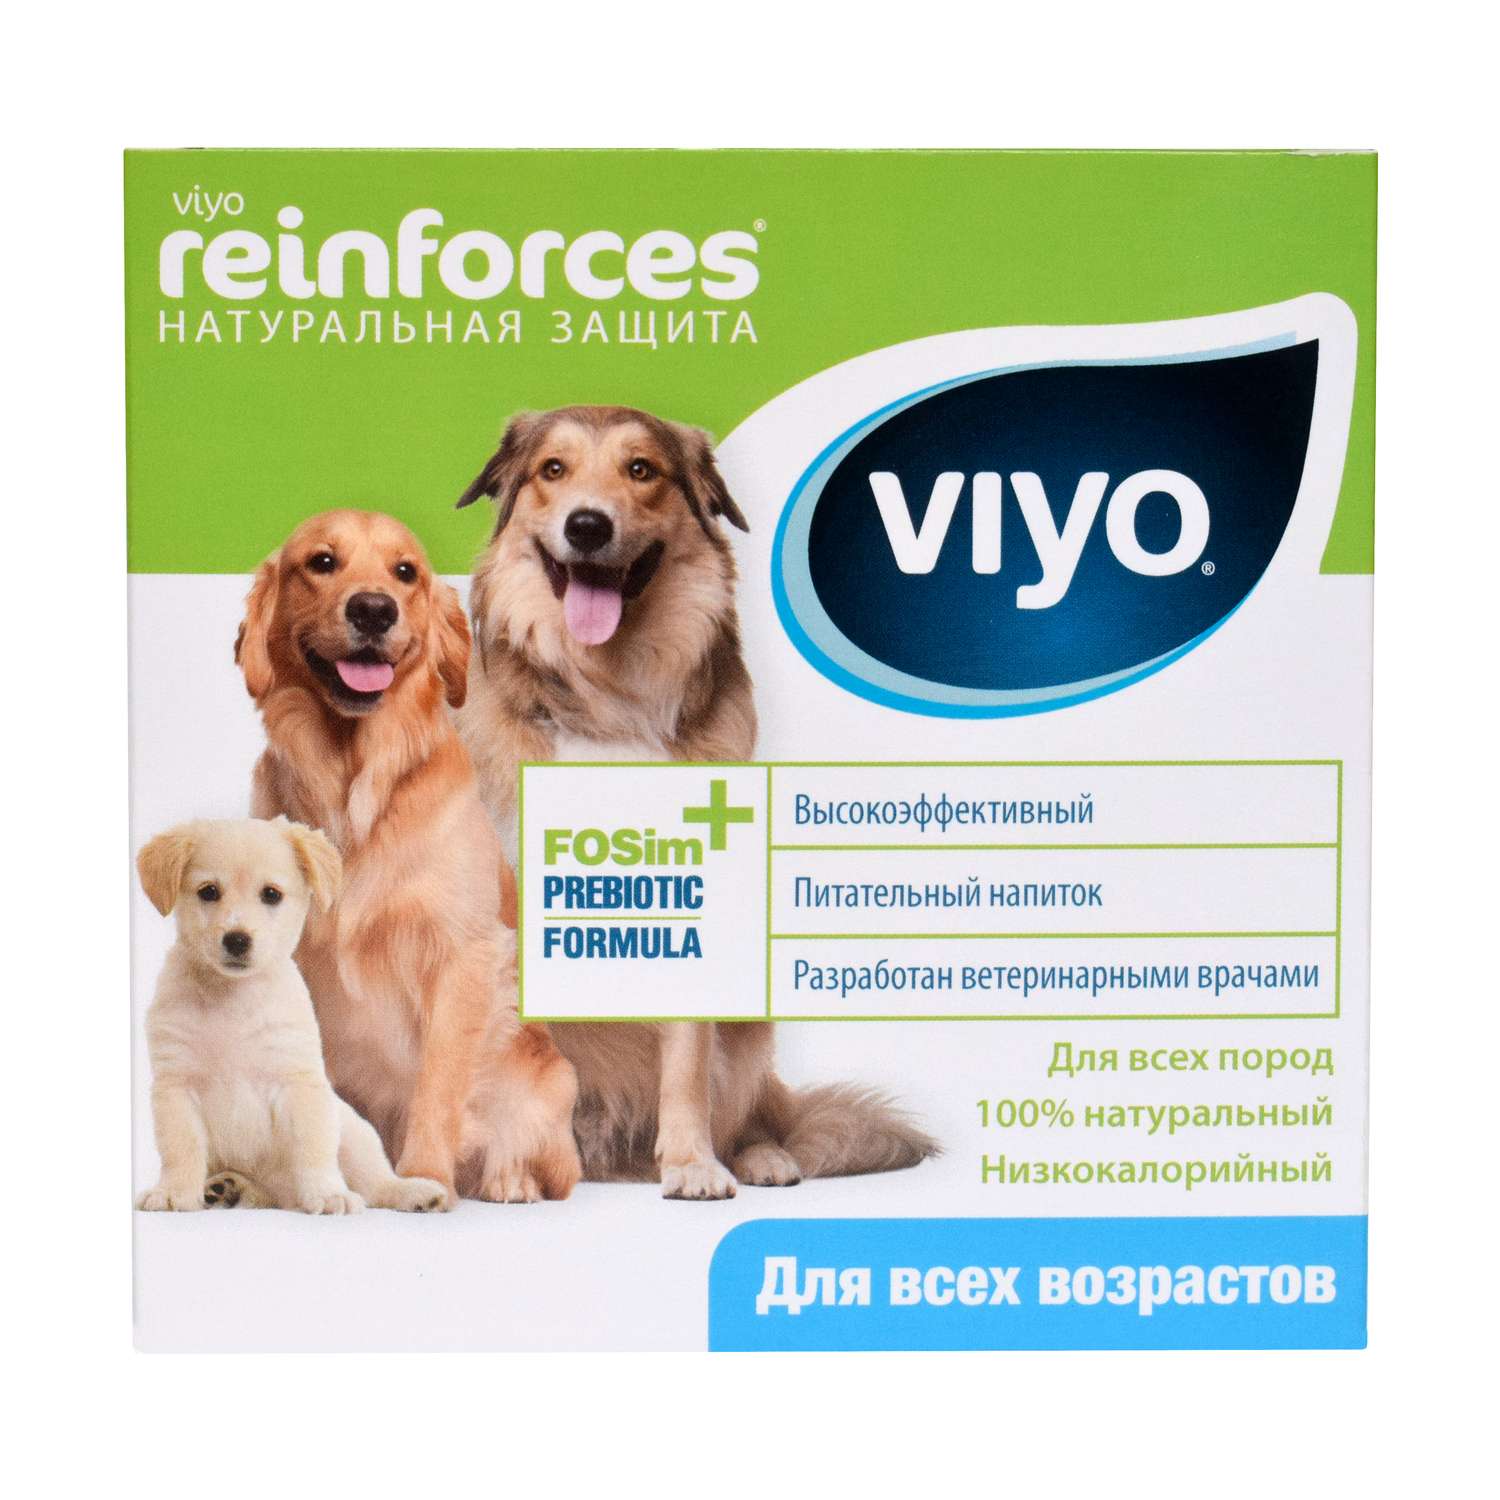 Напиток для собак Viyo Reinforces всех возрастов пребиотический 30мл*7шт - фото 1